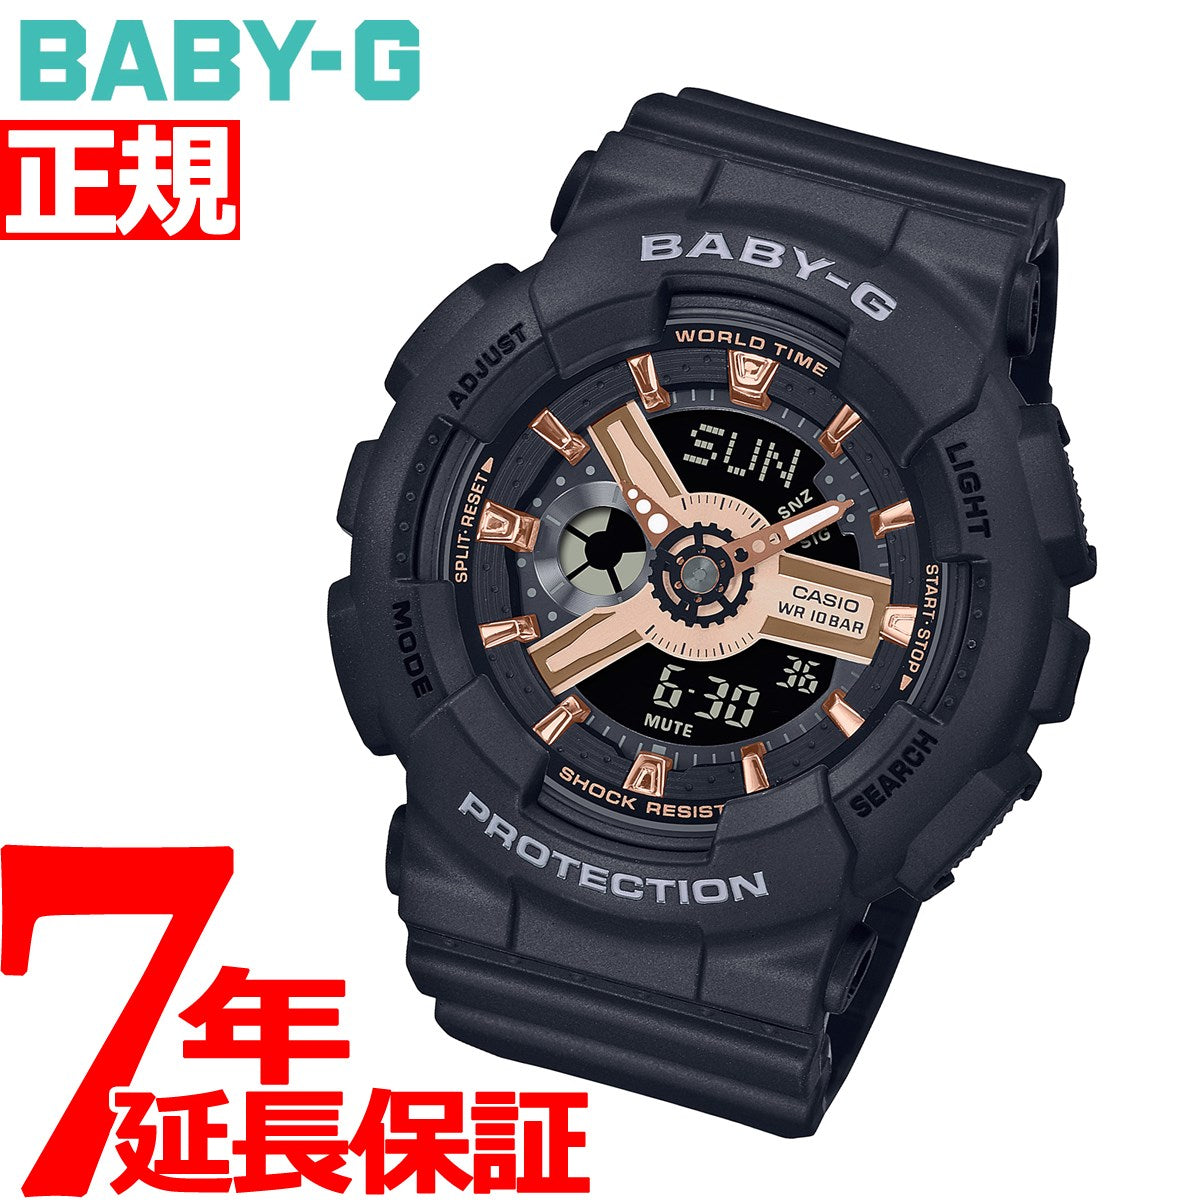 BABY-G カシオ ベビーG レディース 腕時計 BA-110XRG-1AJF ブラック